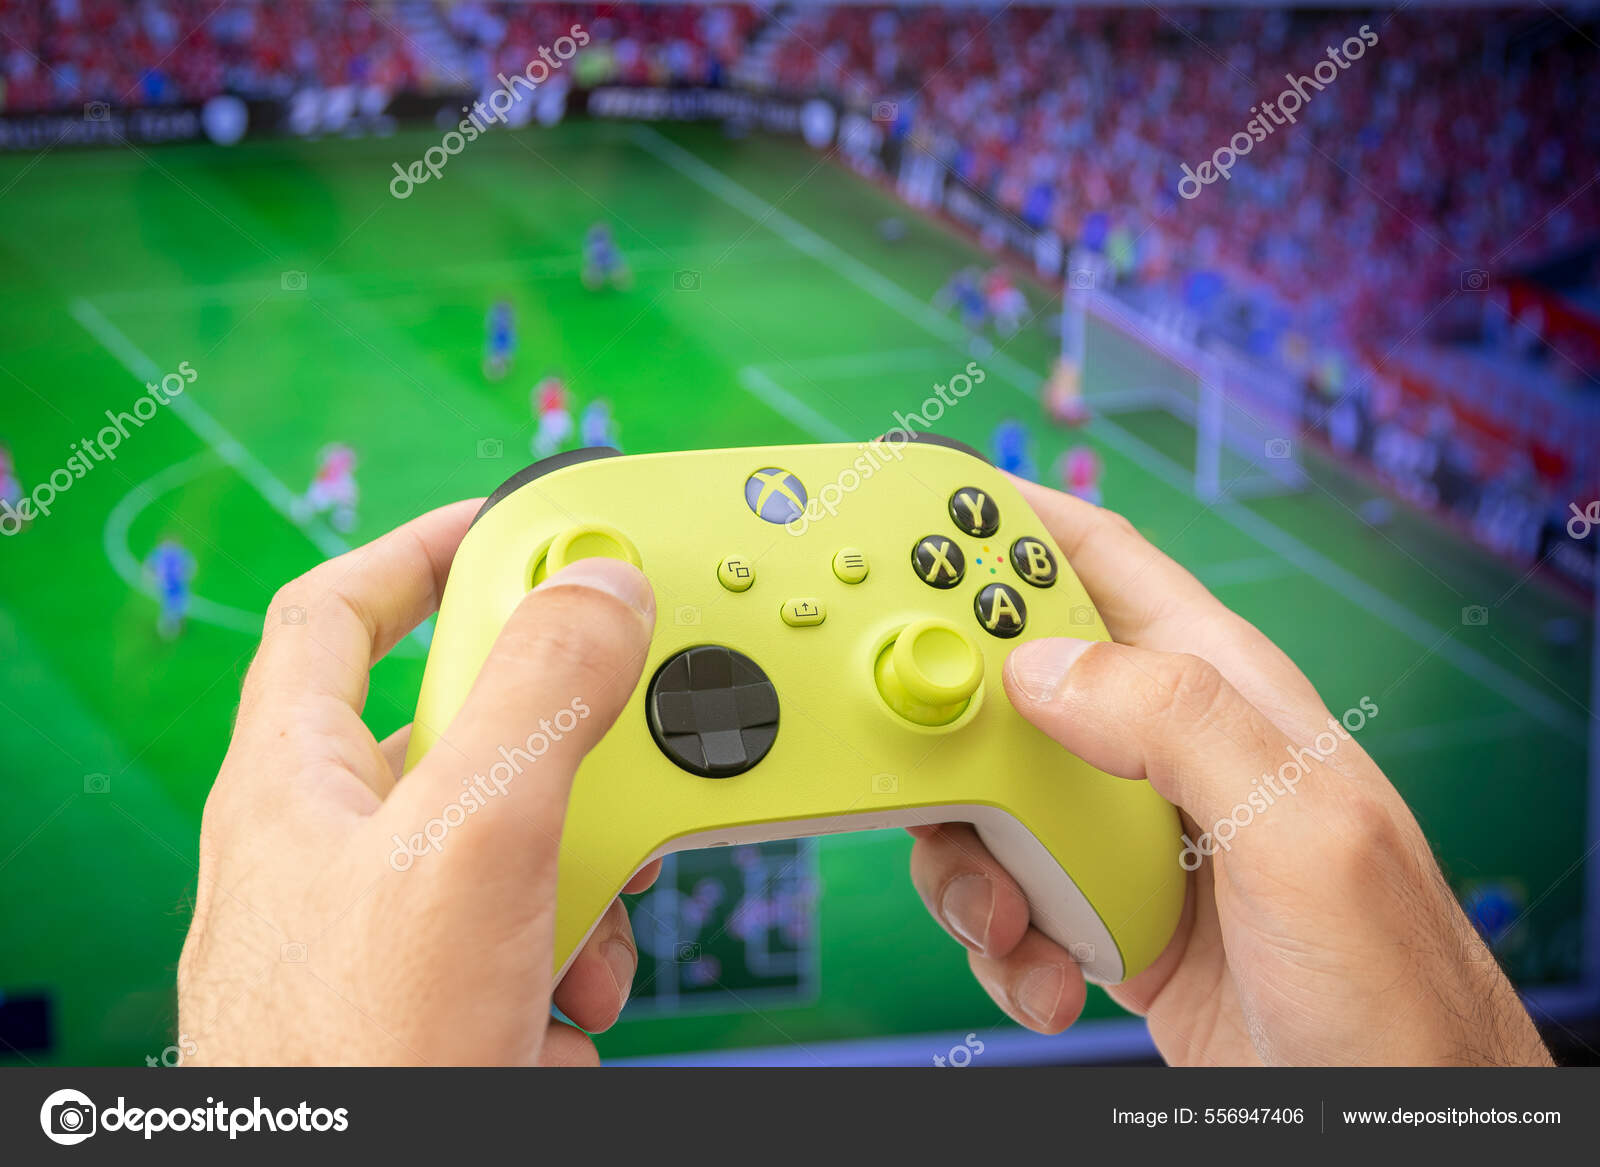 Preços baixos em Microsoft Xbox 360 Jogo de Futebol Video Games